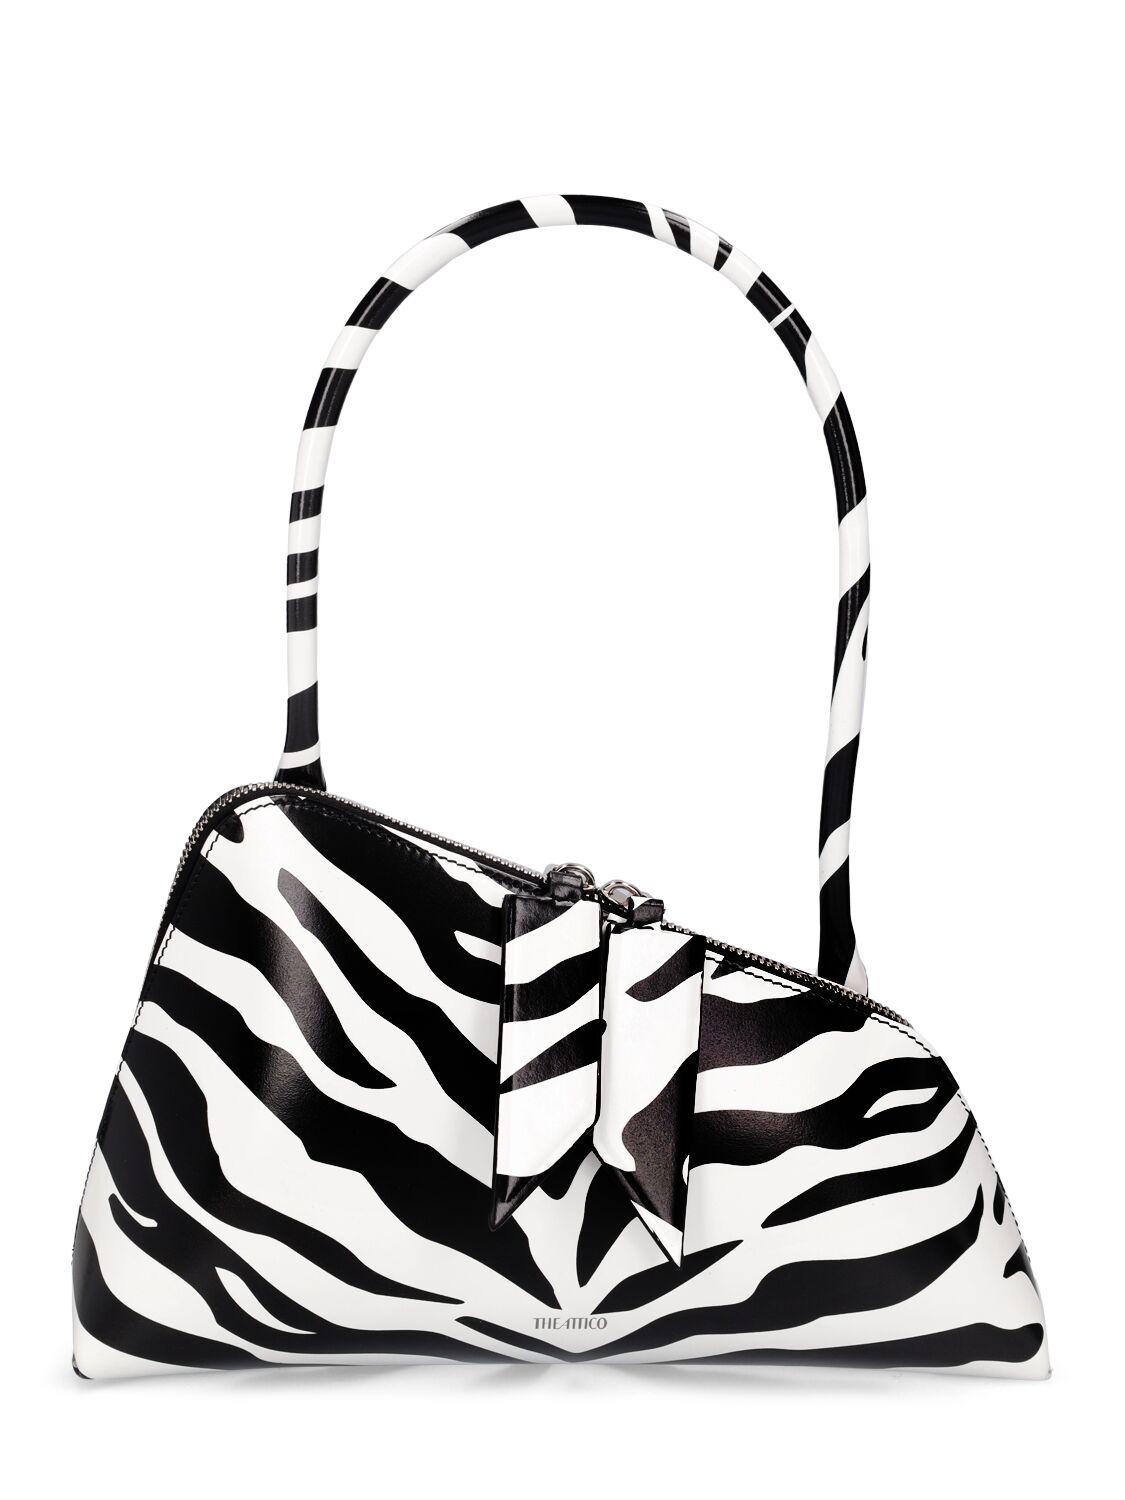 Image of Sunrise Zebra Print Leather Shoulder Bag